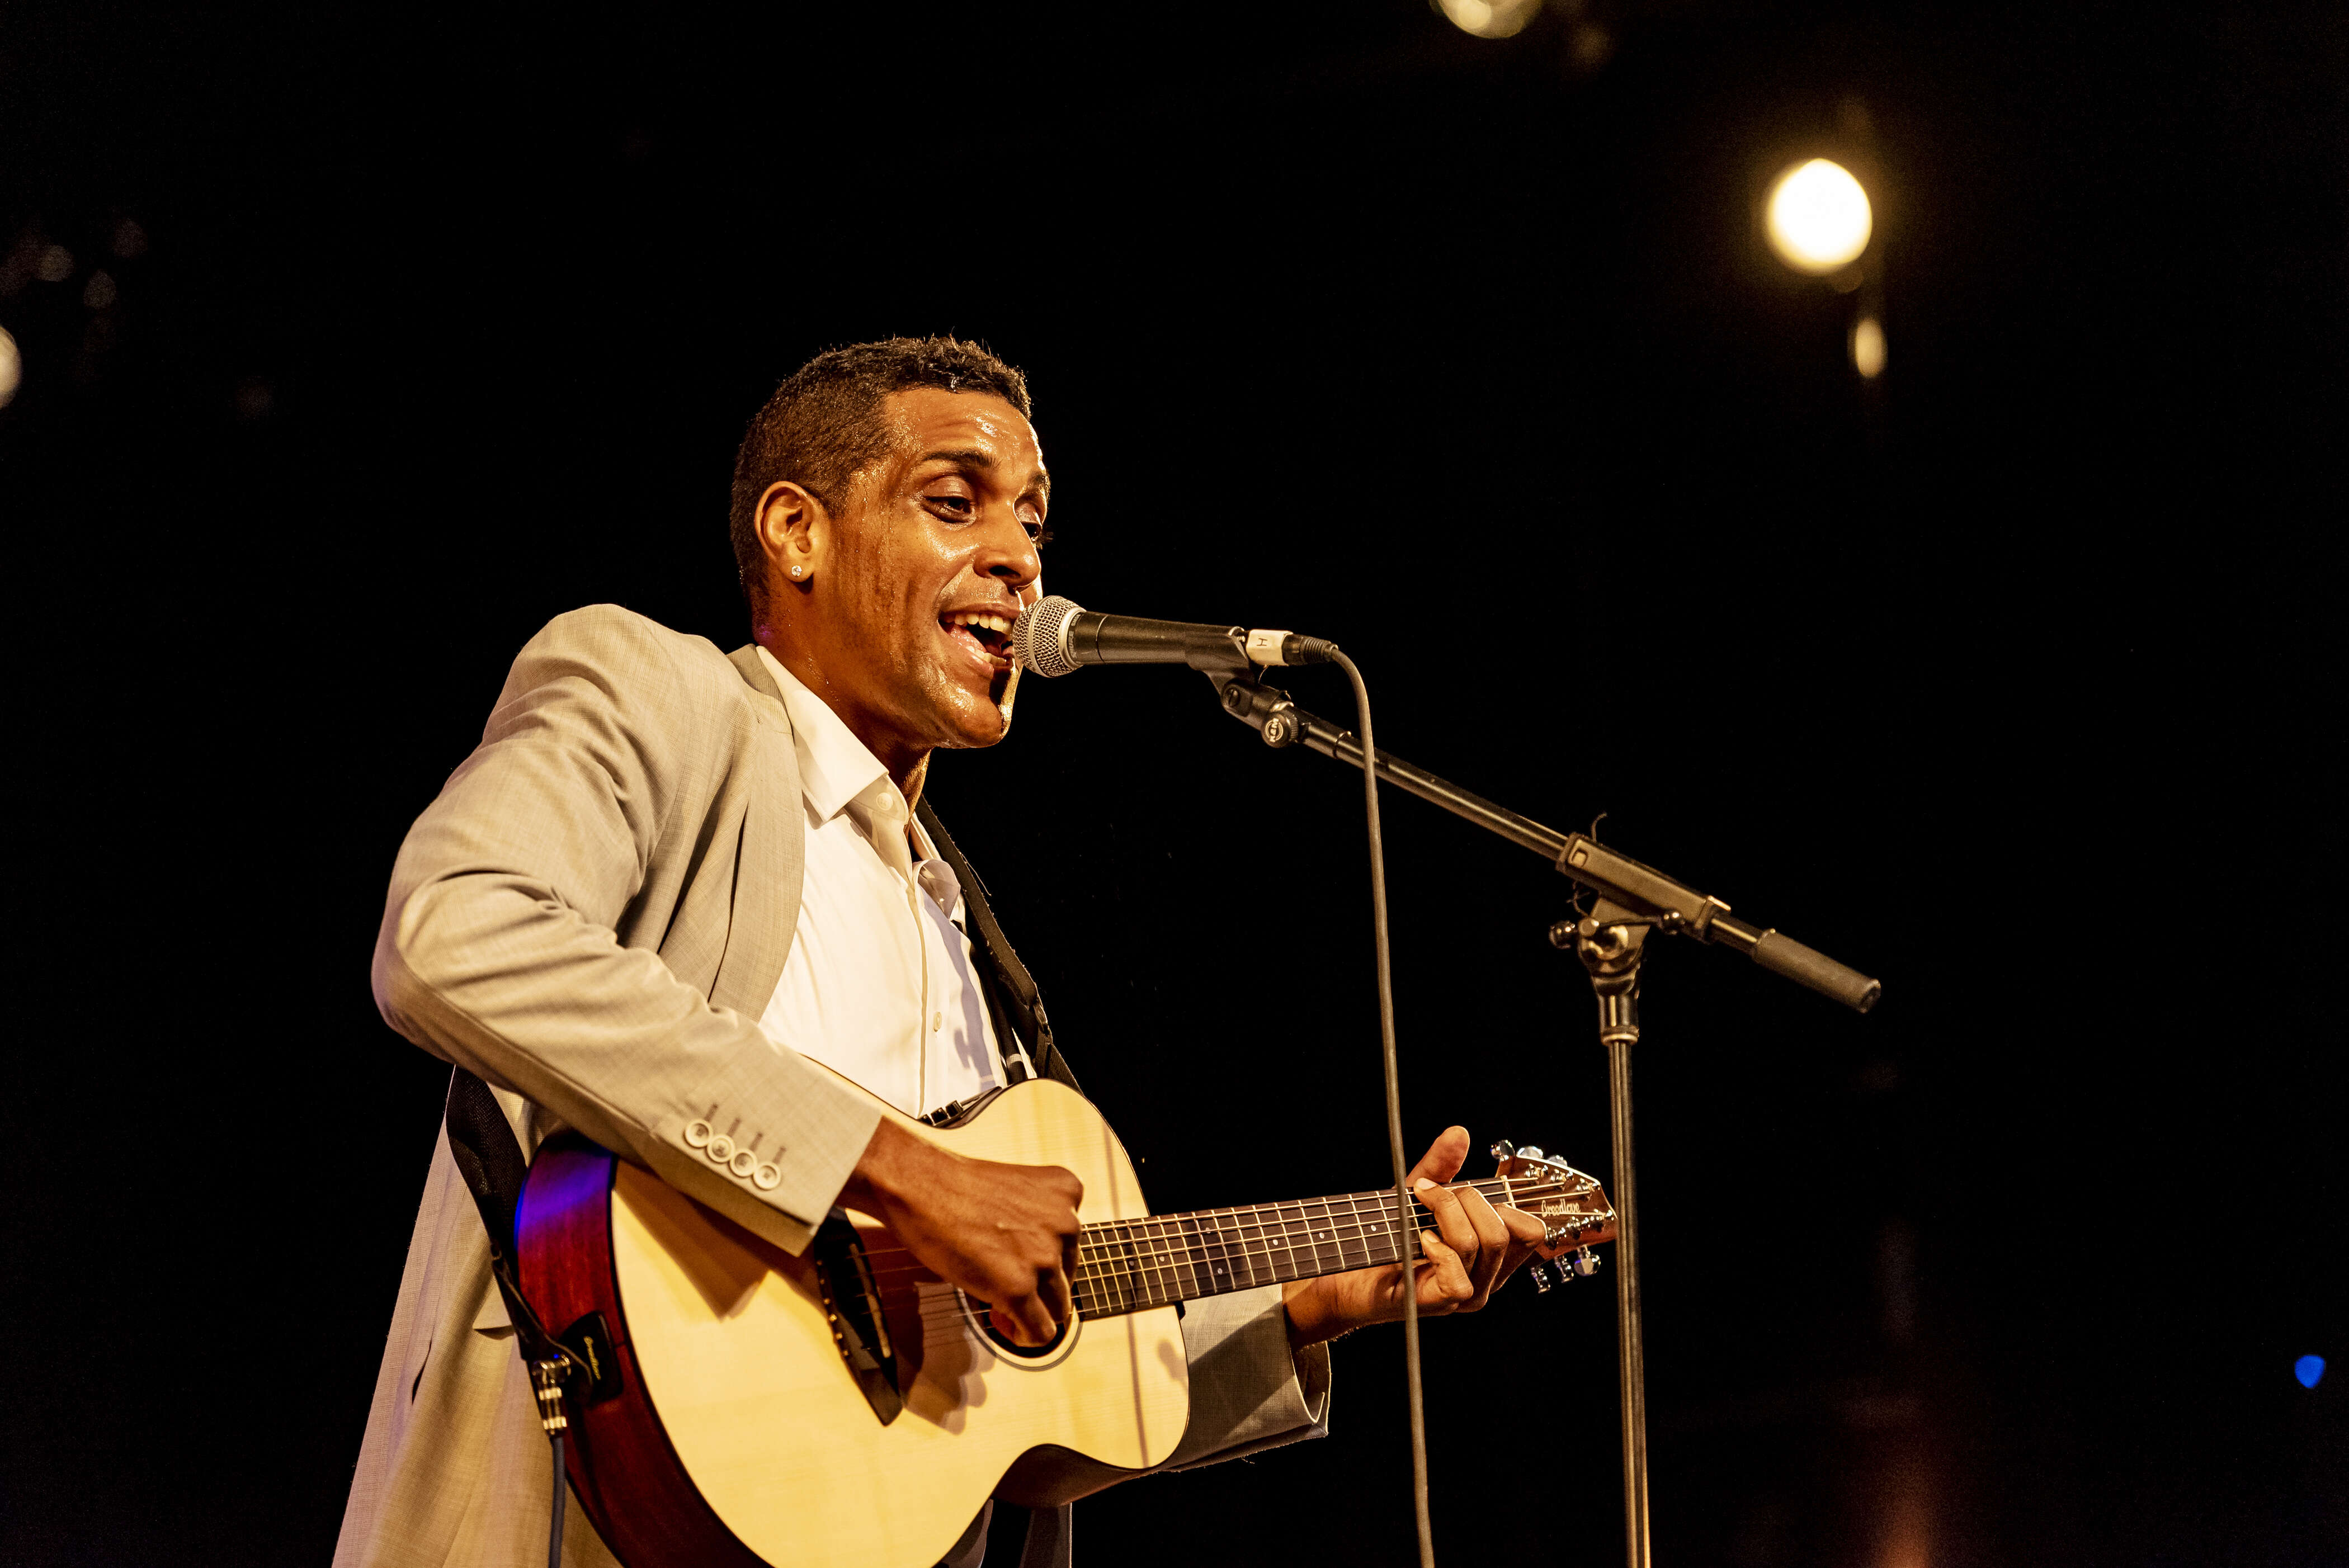 Le chanteur haïtien Michael Benjamin, ou Mikaben, est mort lors d’un concert du groupe Carimi à Bercy, après avoir connu une crise cardiaque (photo d’archive prise lors d’un concert à New York en mai 2019).